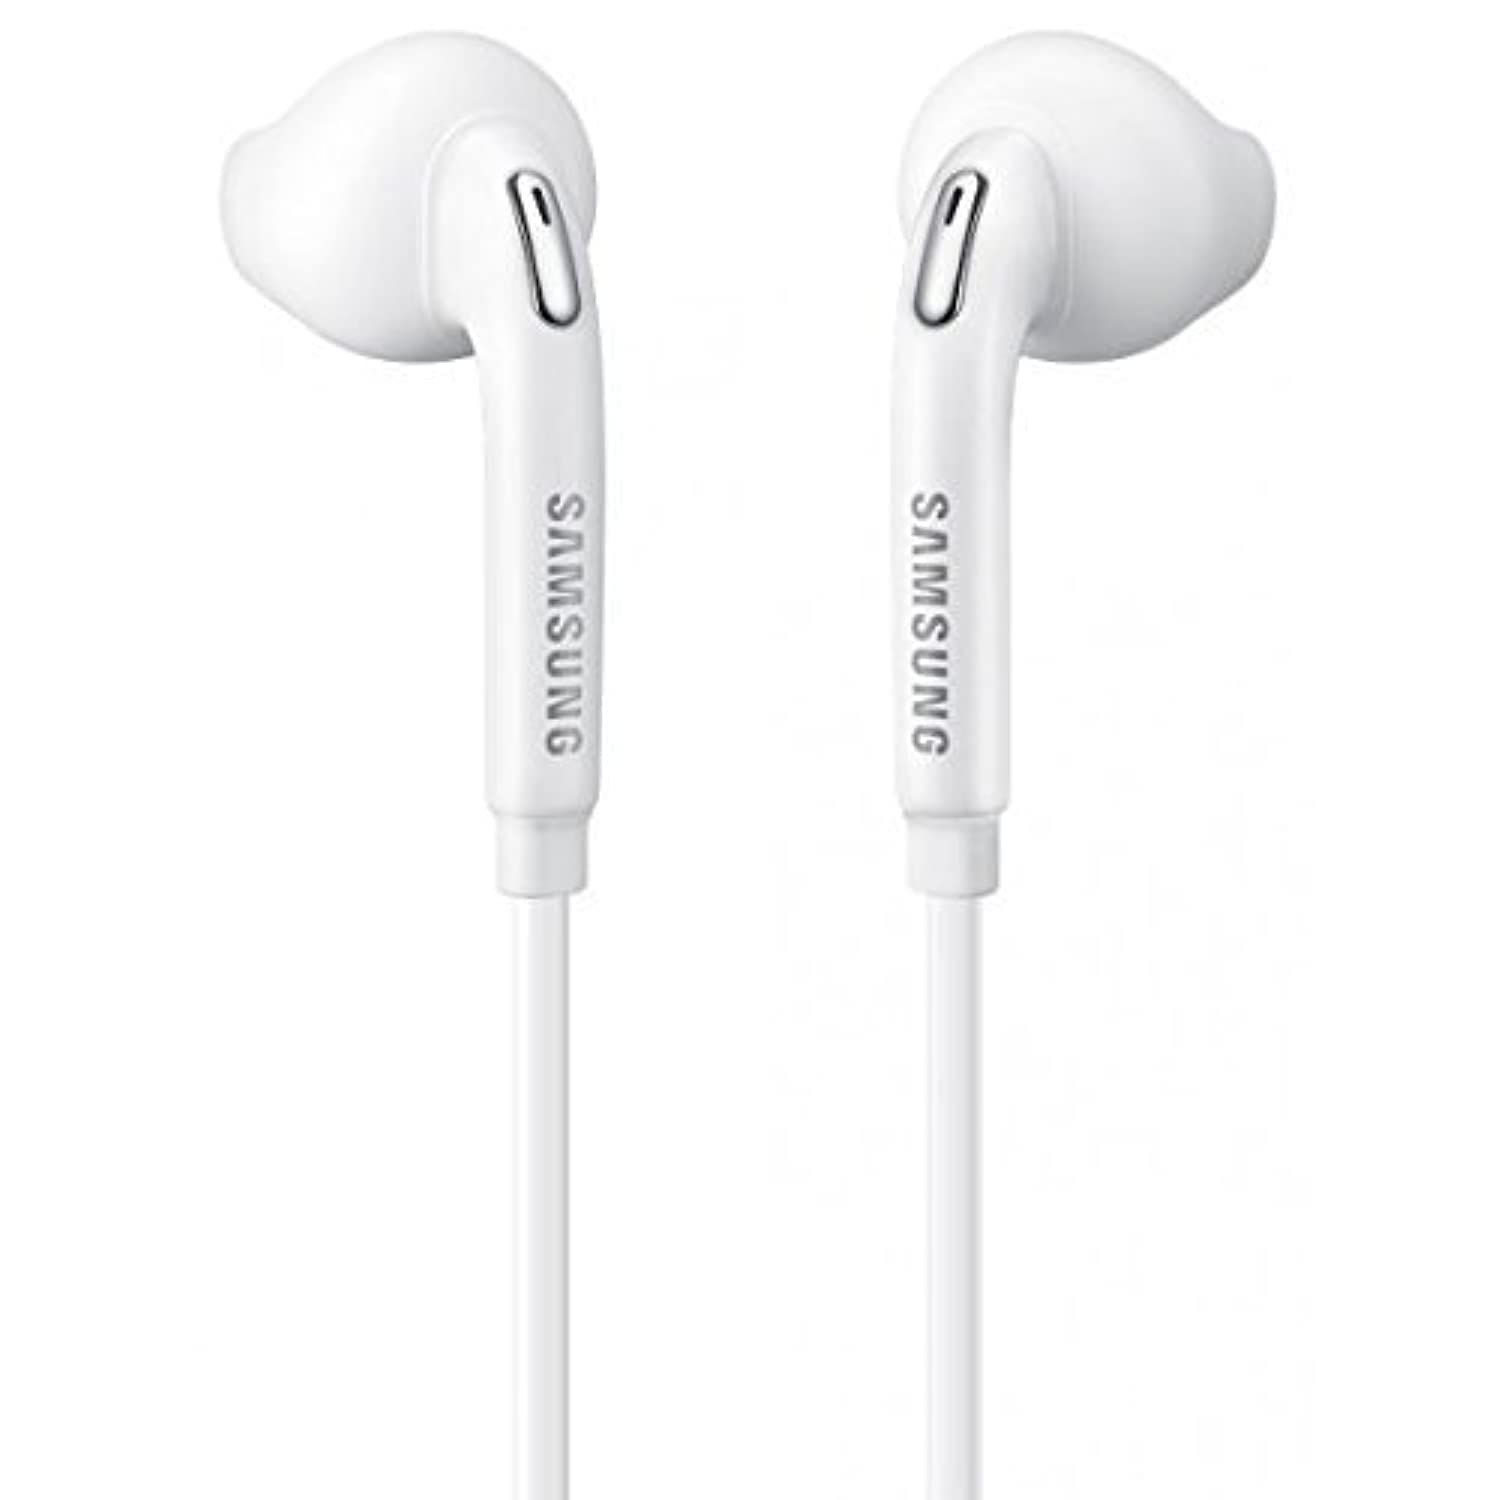 Samsung Fone de ouvido/mãos livres/fone de ouvido Eo-Eg920Bw branco com controle de volume para telefones Galaxy (embalagem não varejista - embalagem a granel)